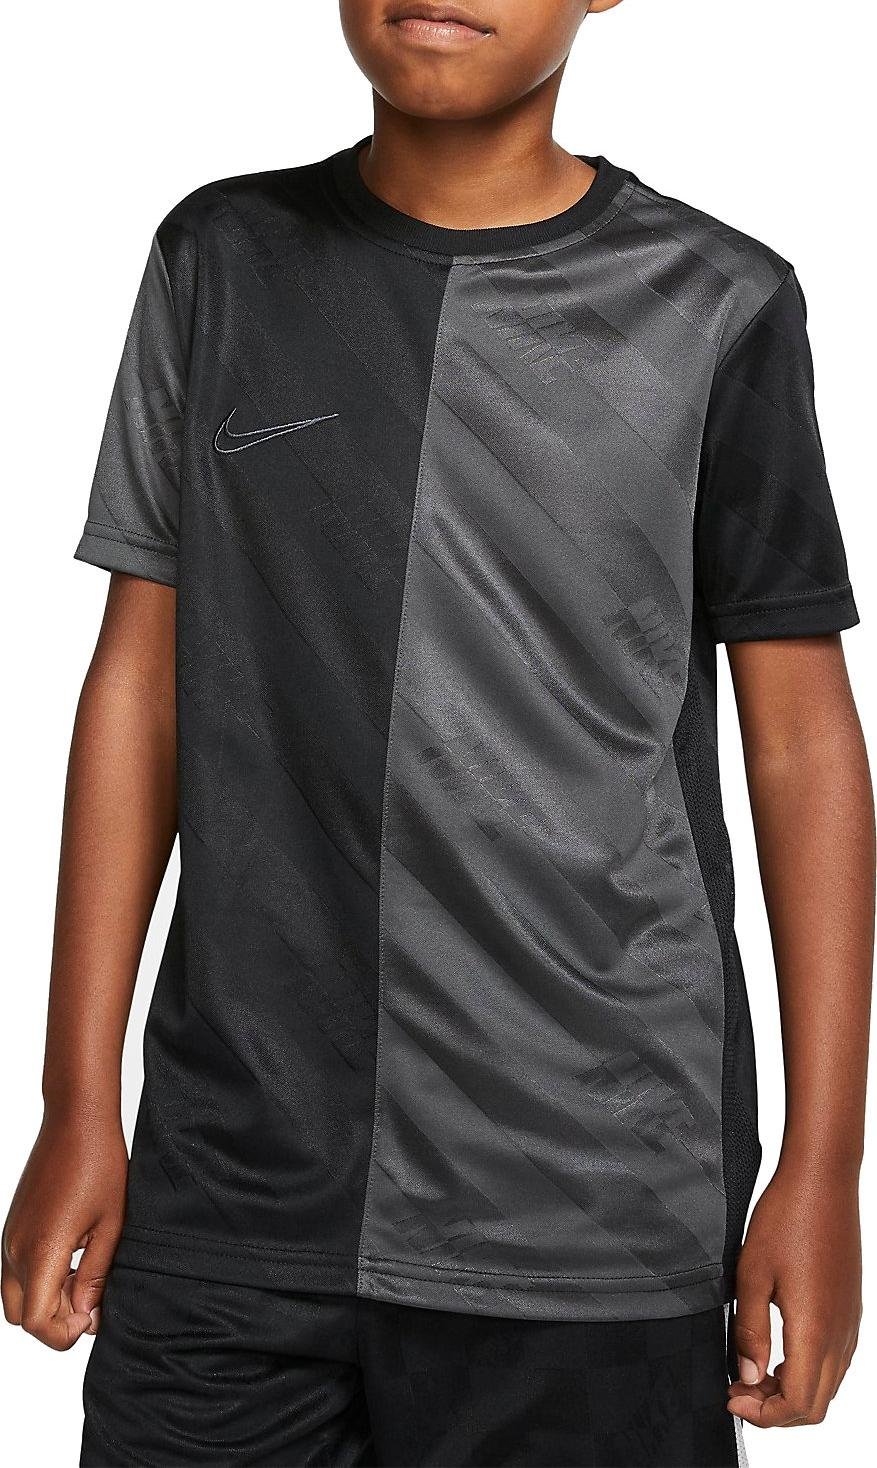 Dětské fotbalové tričko s krátkým rukávem Nike Dri-FIT Academy